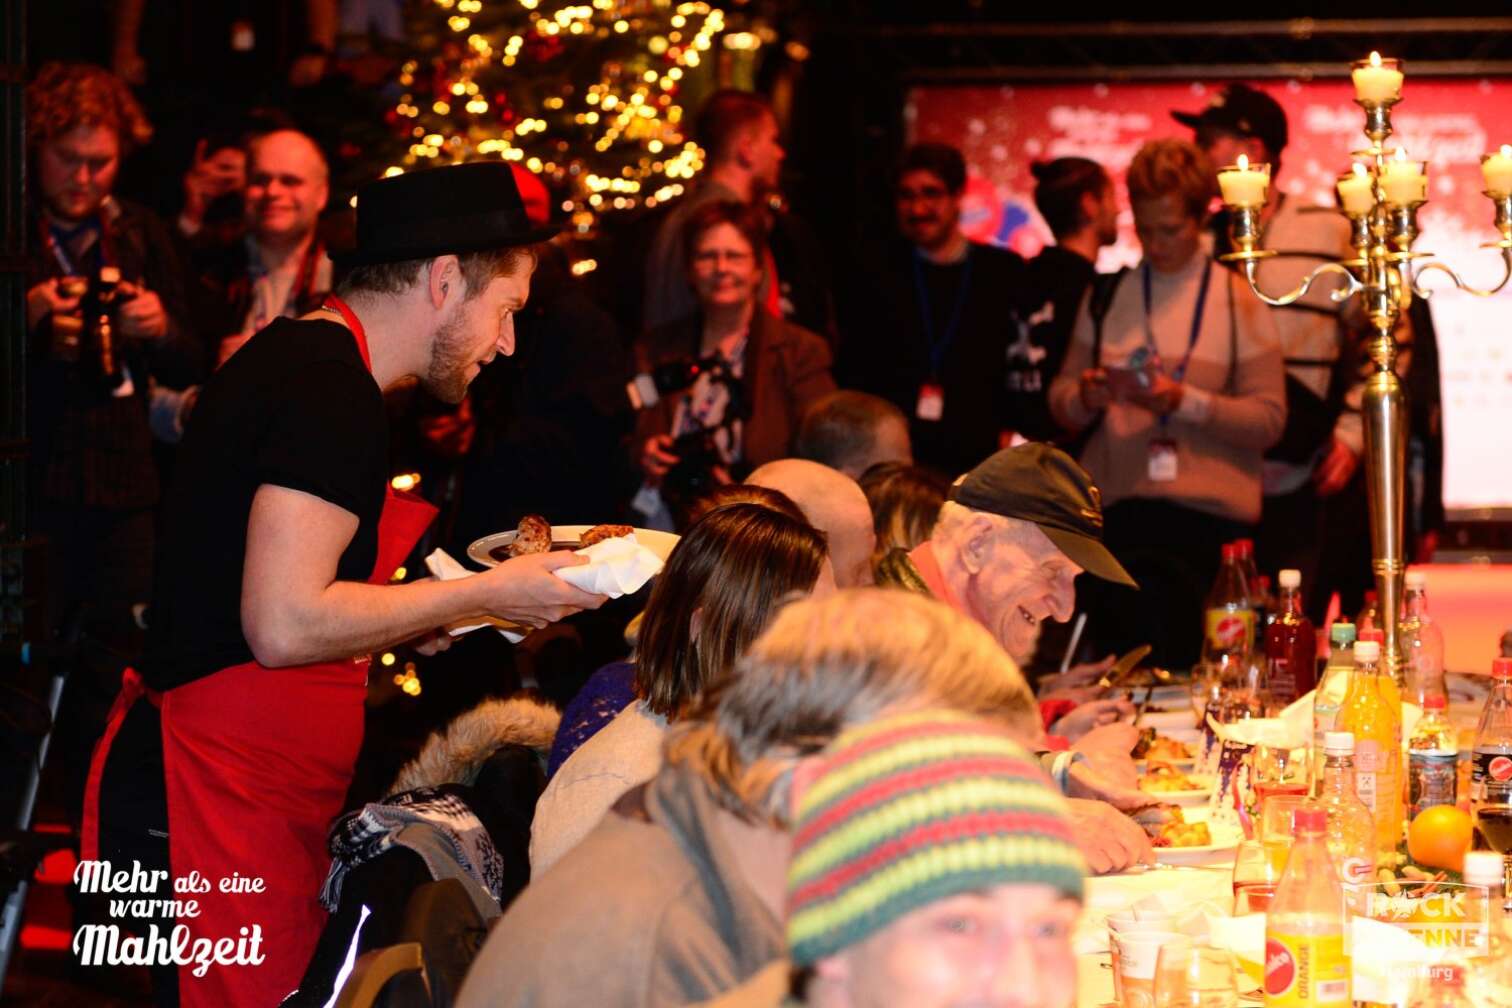 Foto der Hamburger Bedürftigenweihnachtsfeier "Mehr als eine warme Mahlzeit" in der Fischauktionshalle